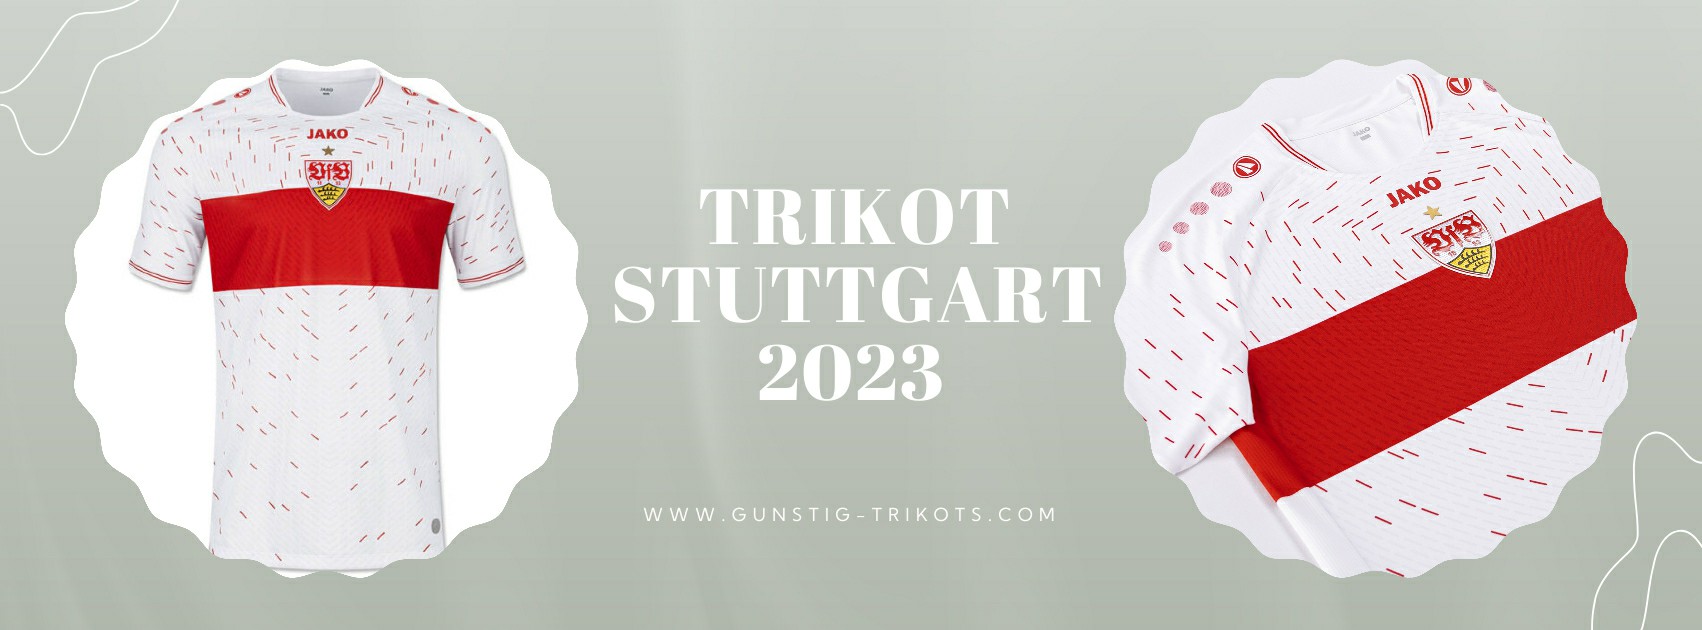 Stuttgart Trikot 2023-2024